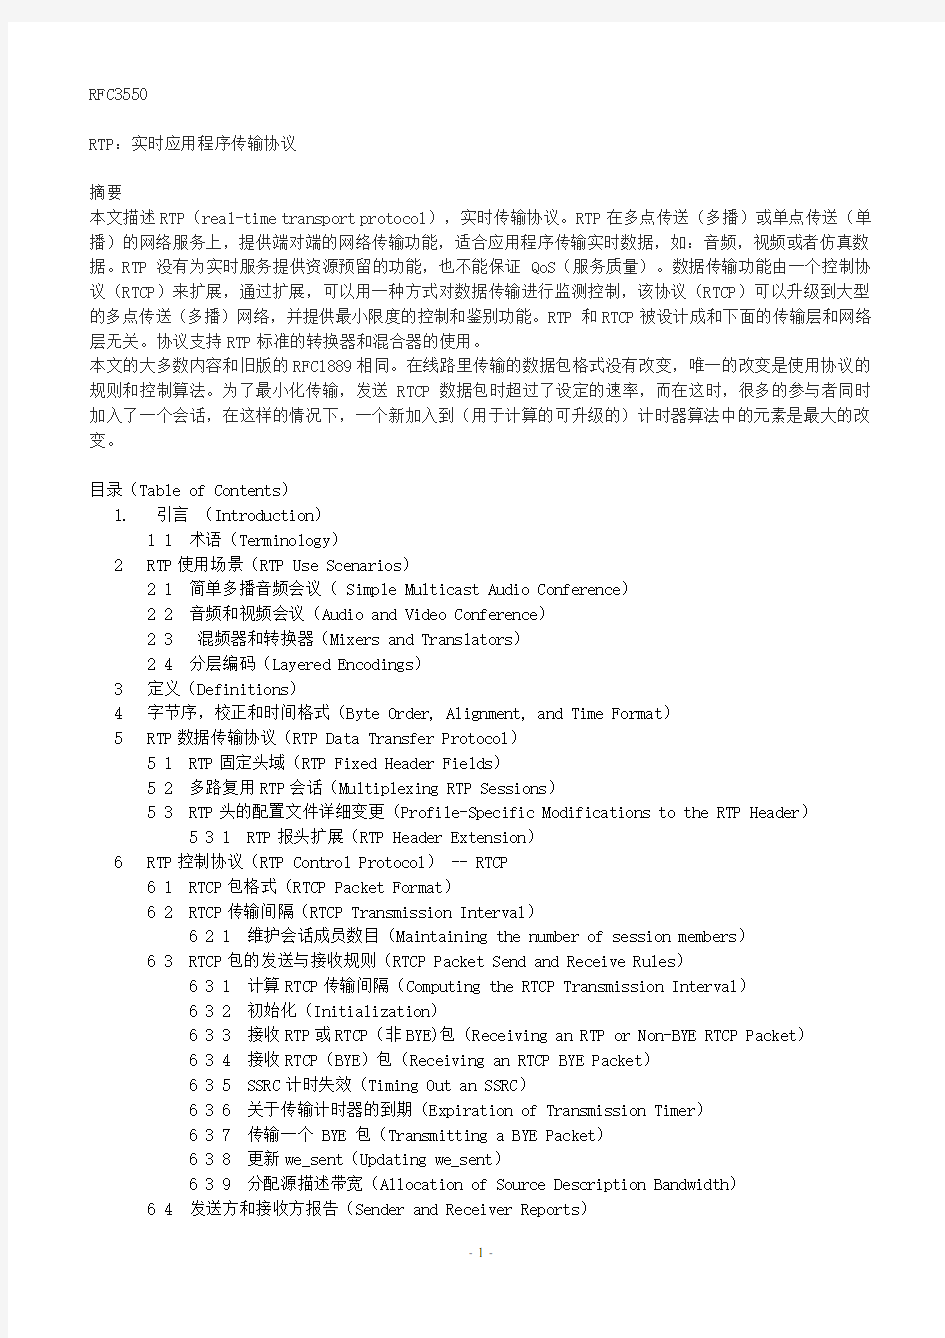 RFC3550_RTP中文版